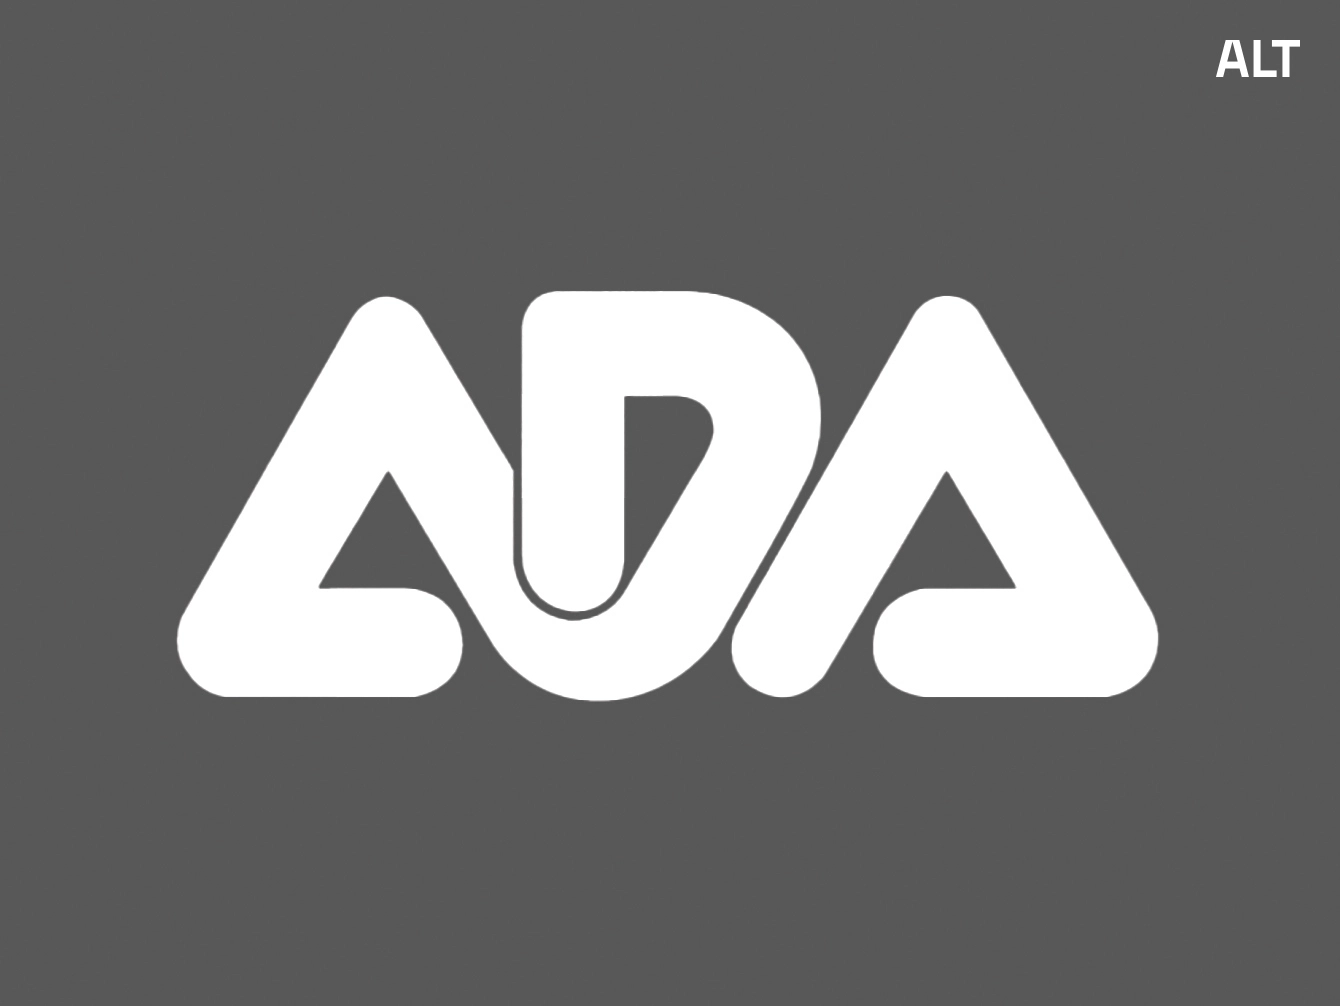 Gezeigt wird das alte Logo von ADA in weiß vor einem grauen Hintergrund. Zu erkennen sind die Buchstaben ADA in morderner miteinander verbundener Art. 